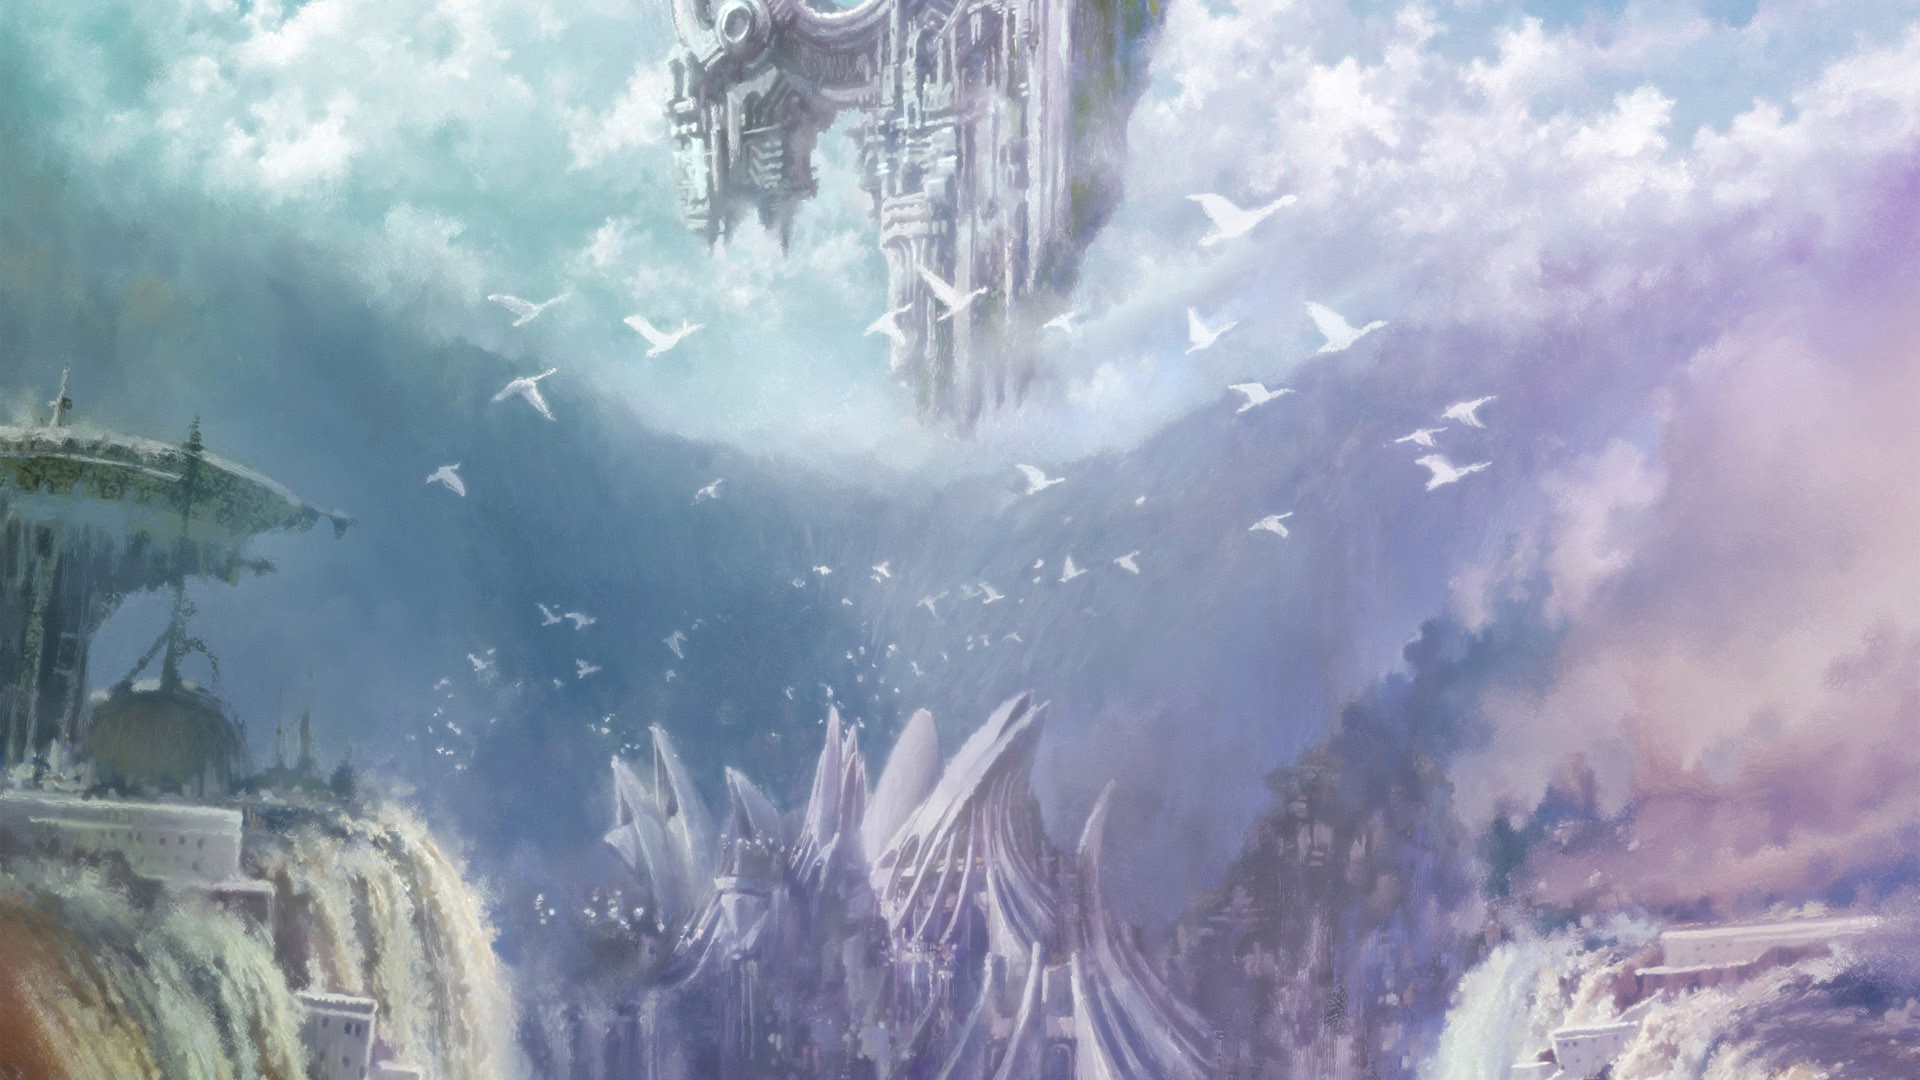 Descarga gratuita de fondo de pantalla para móvil de Aion: The Tower Of Eternity, Videojuego.